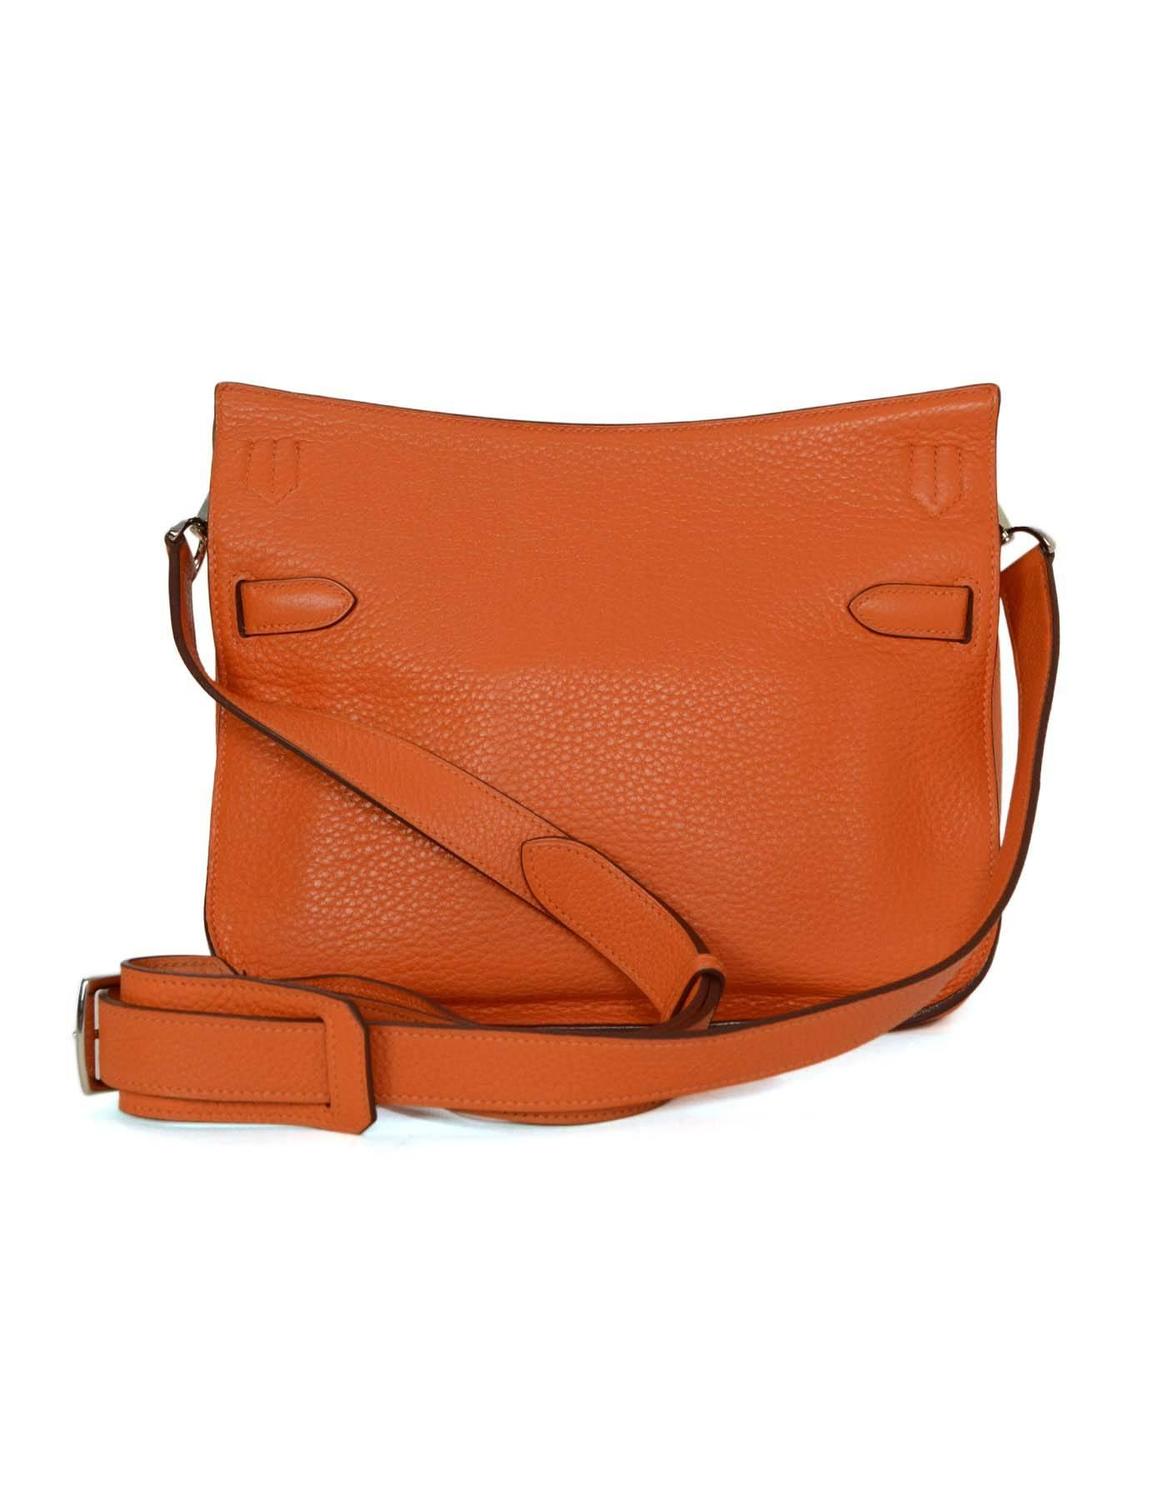 Hermes Orange Clemence 28cm Jypsiere Crossbody Bag PHW rt. $8,500 For Sale at 1stdibs